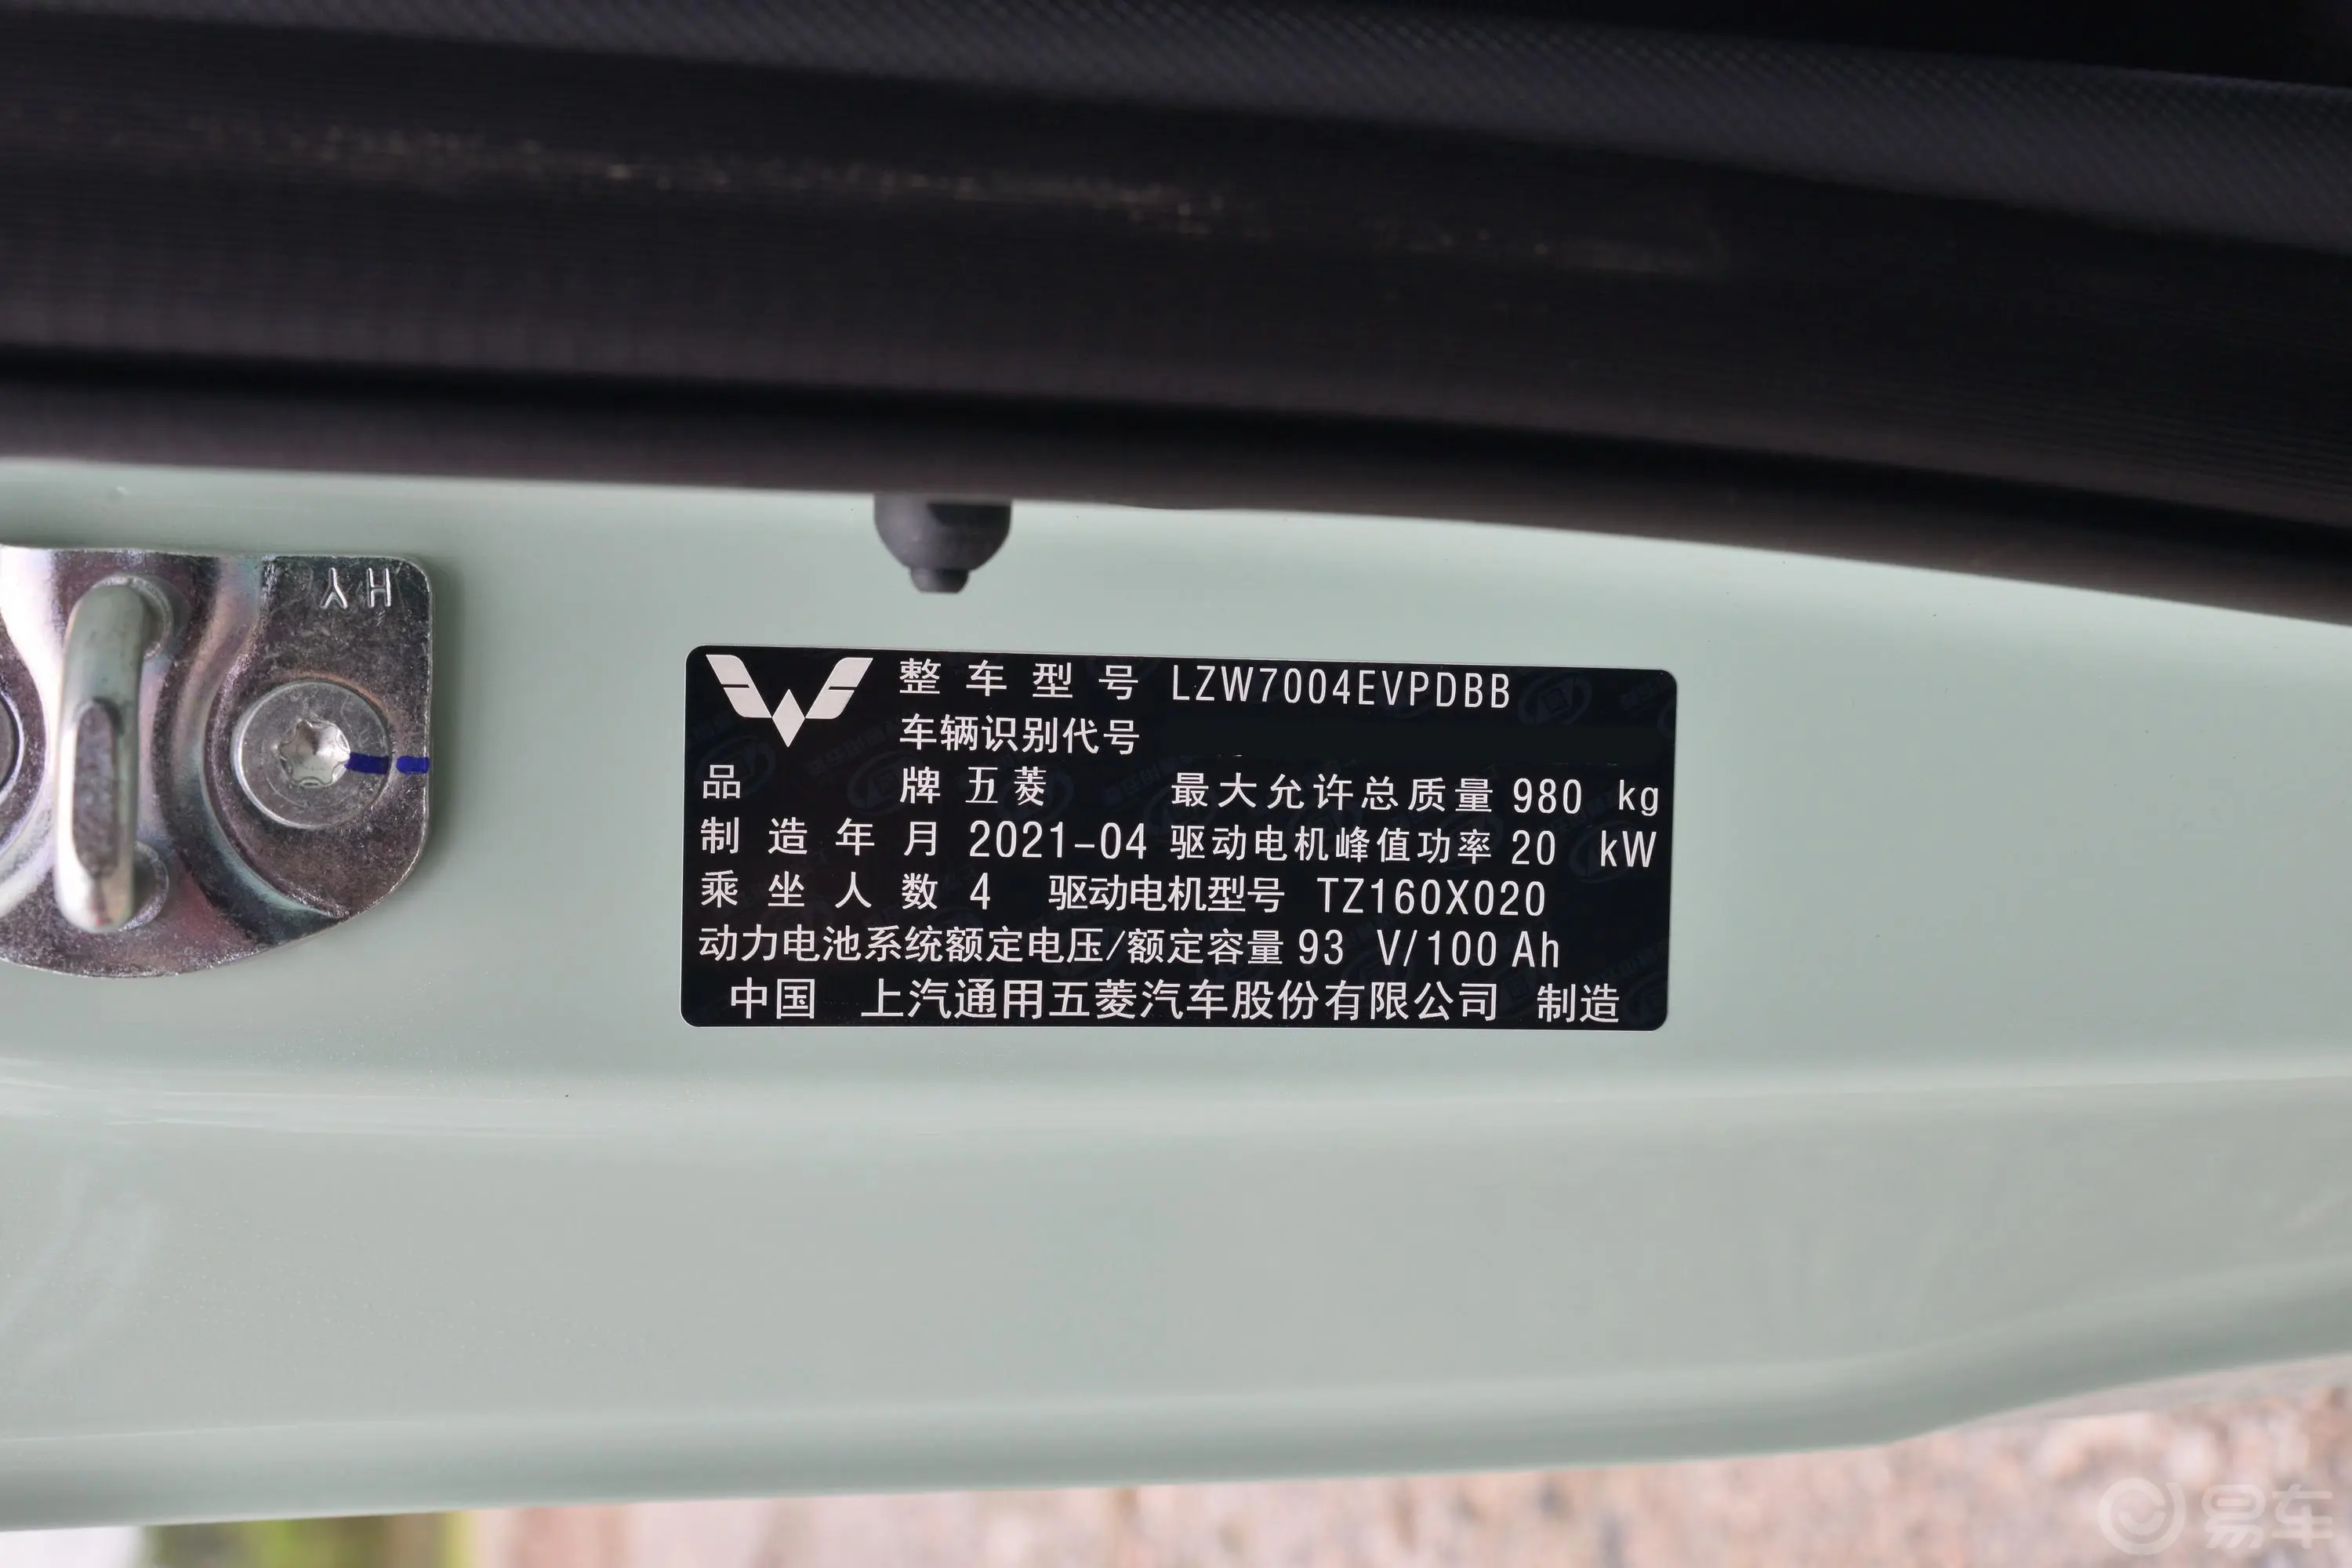 宏光MINIEV马卡龙时尚款 120KM 磷酸铁锂车辆信息铭牌